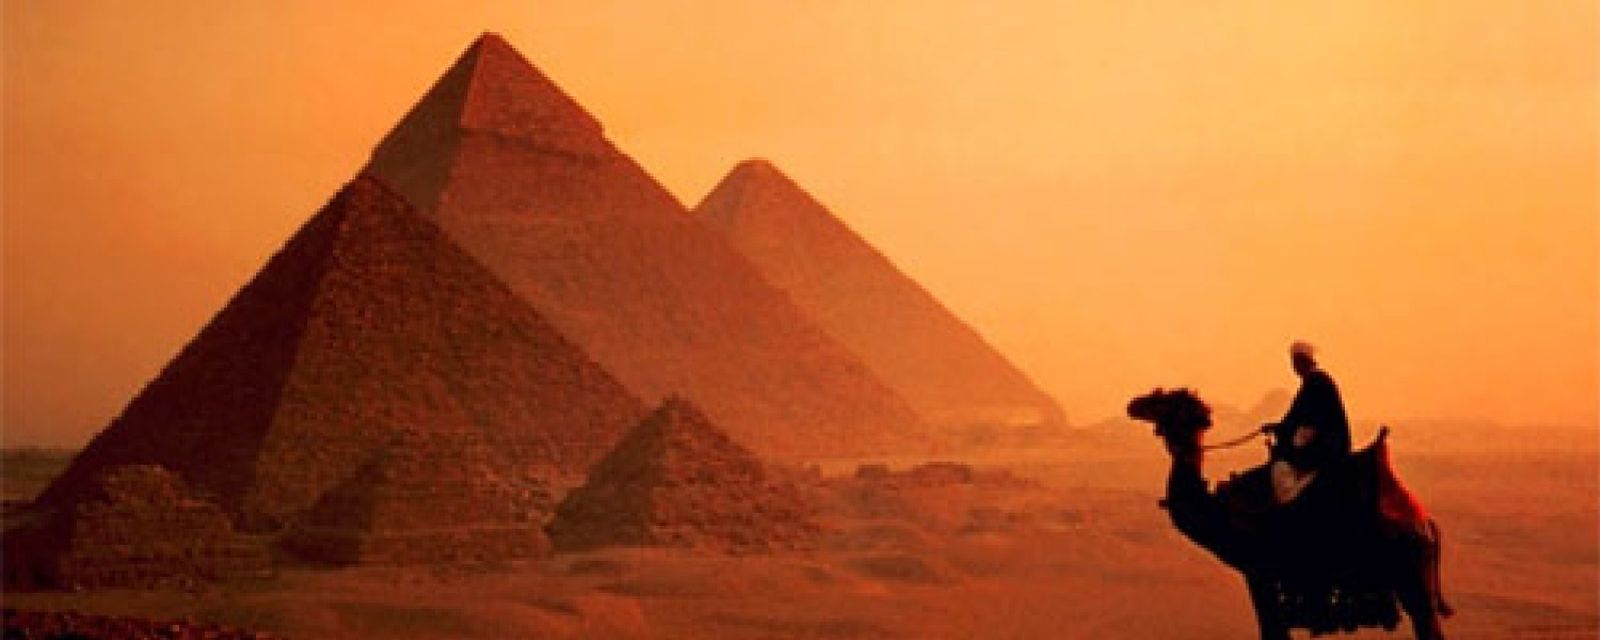 Foto: Descubren dos nuevas pirámides en Egipto a través de Google Earth